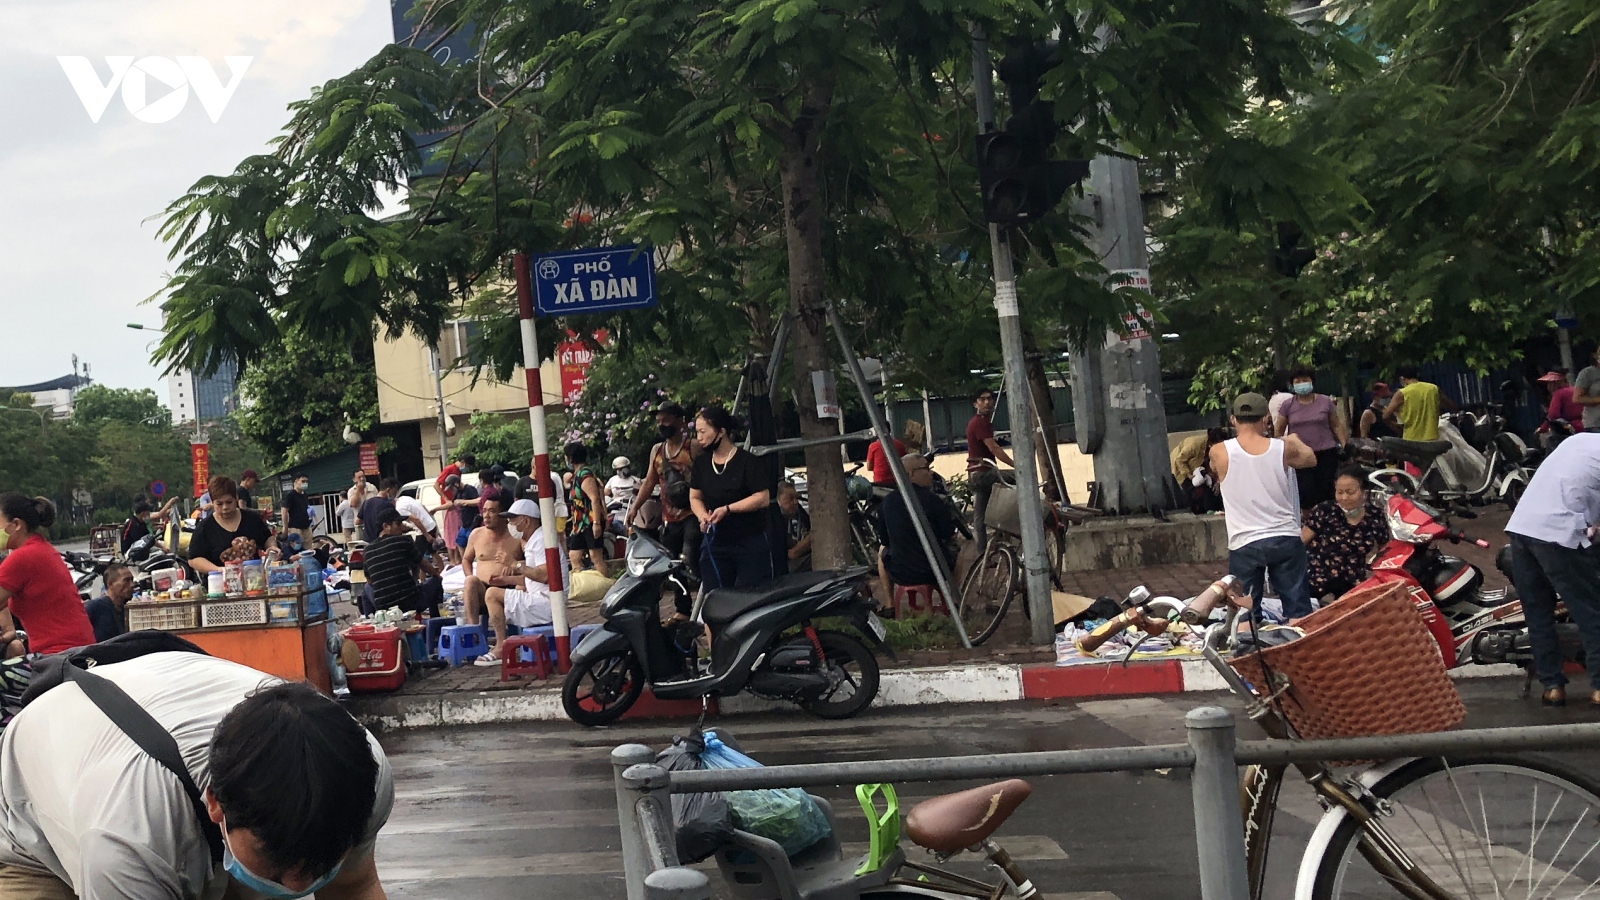 Chợ cóc đồ cũ ở Hà Nội vẫn tụ tập đông người bất chấp dịch Covid-19 phức tạp